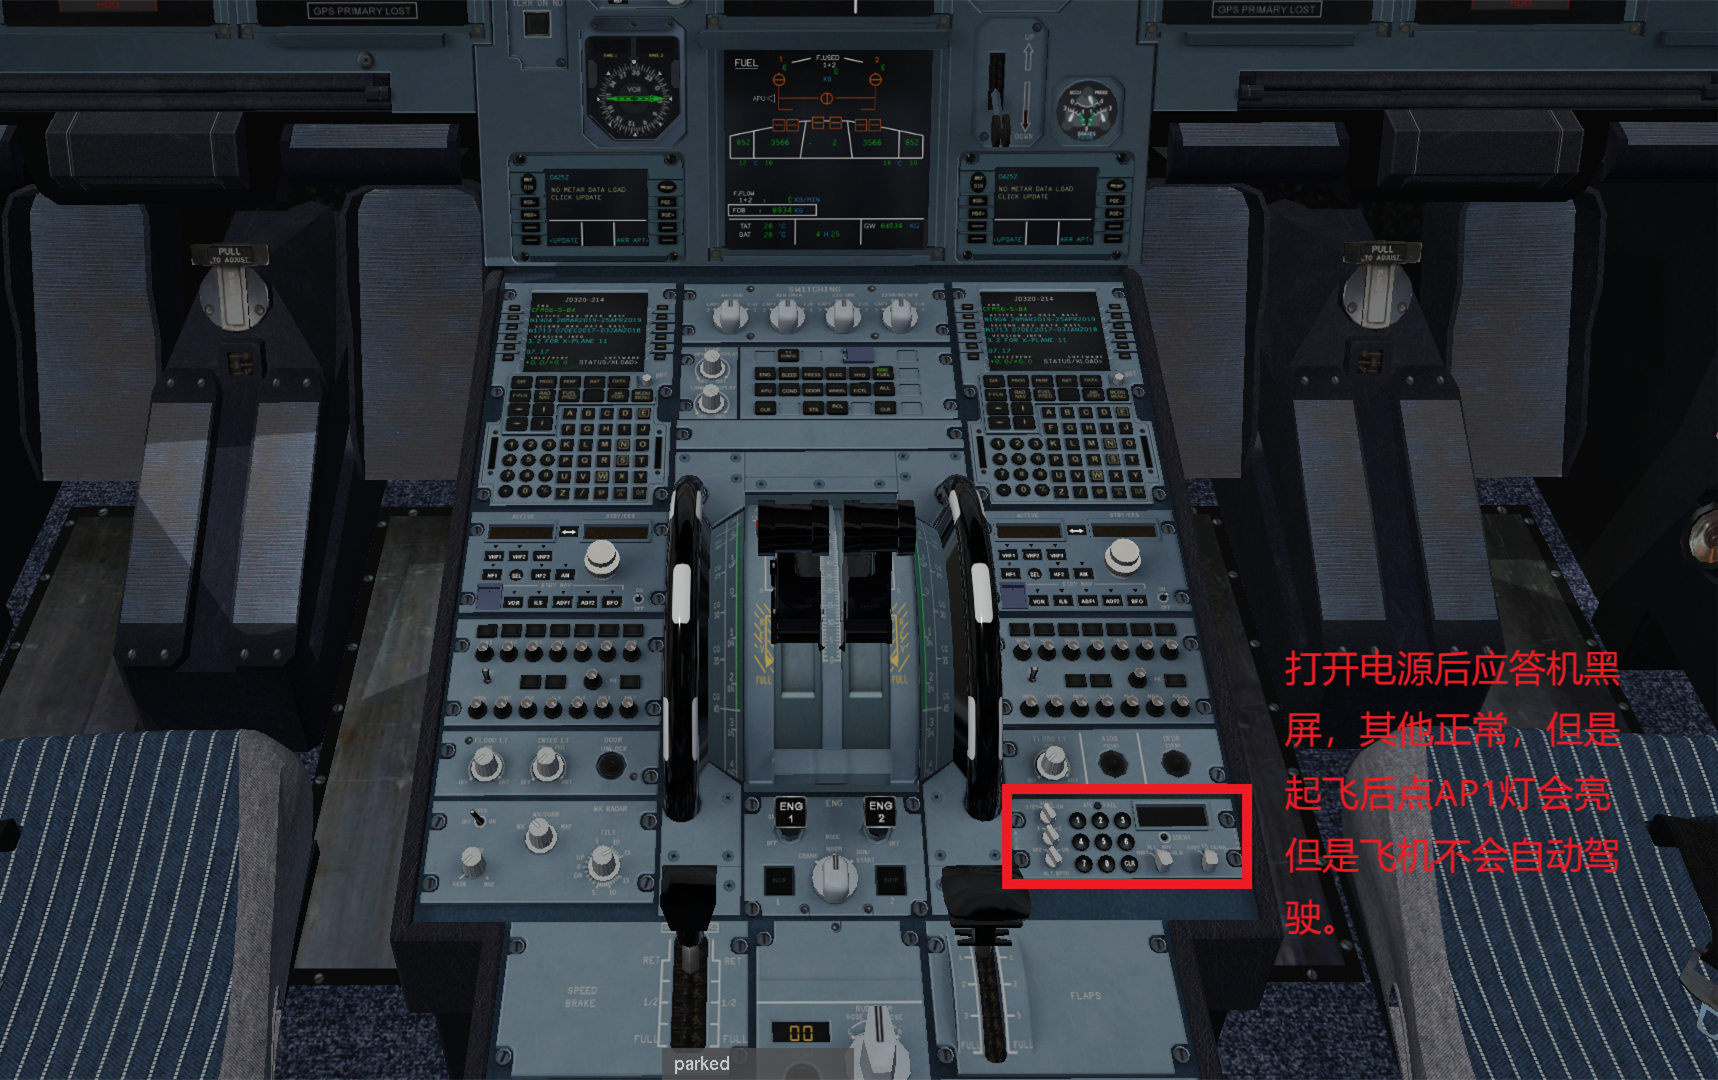 JARD A320  不能导航应答机黑屏的解决办法-9712 